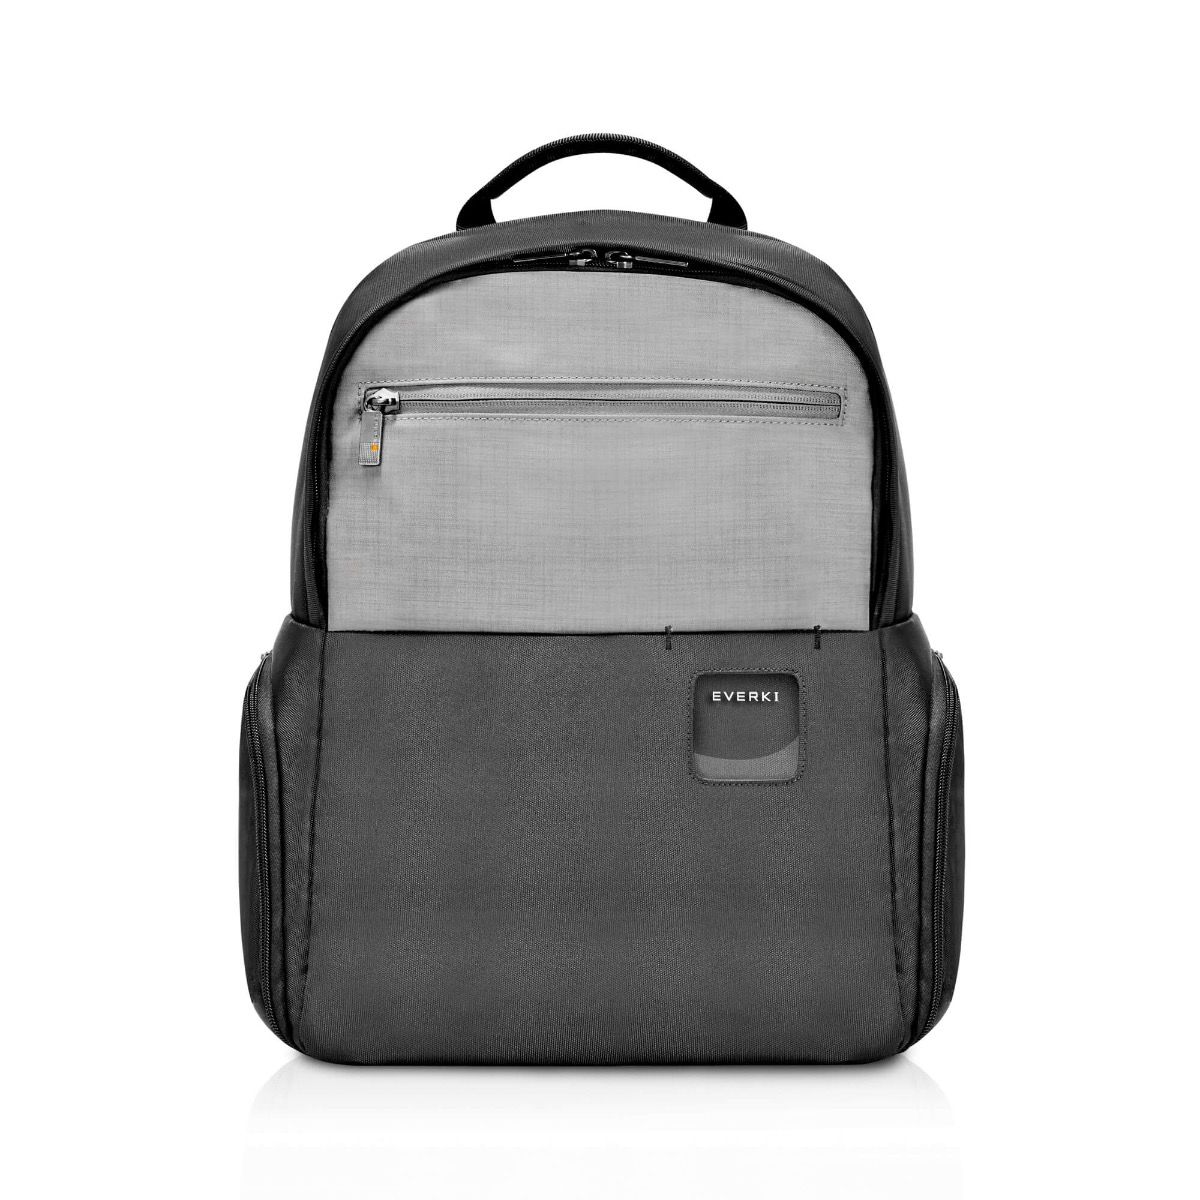 EVERKI ContemPRO 15 Inch Black Laptop Backpack